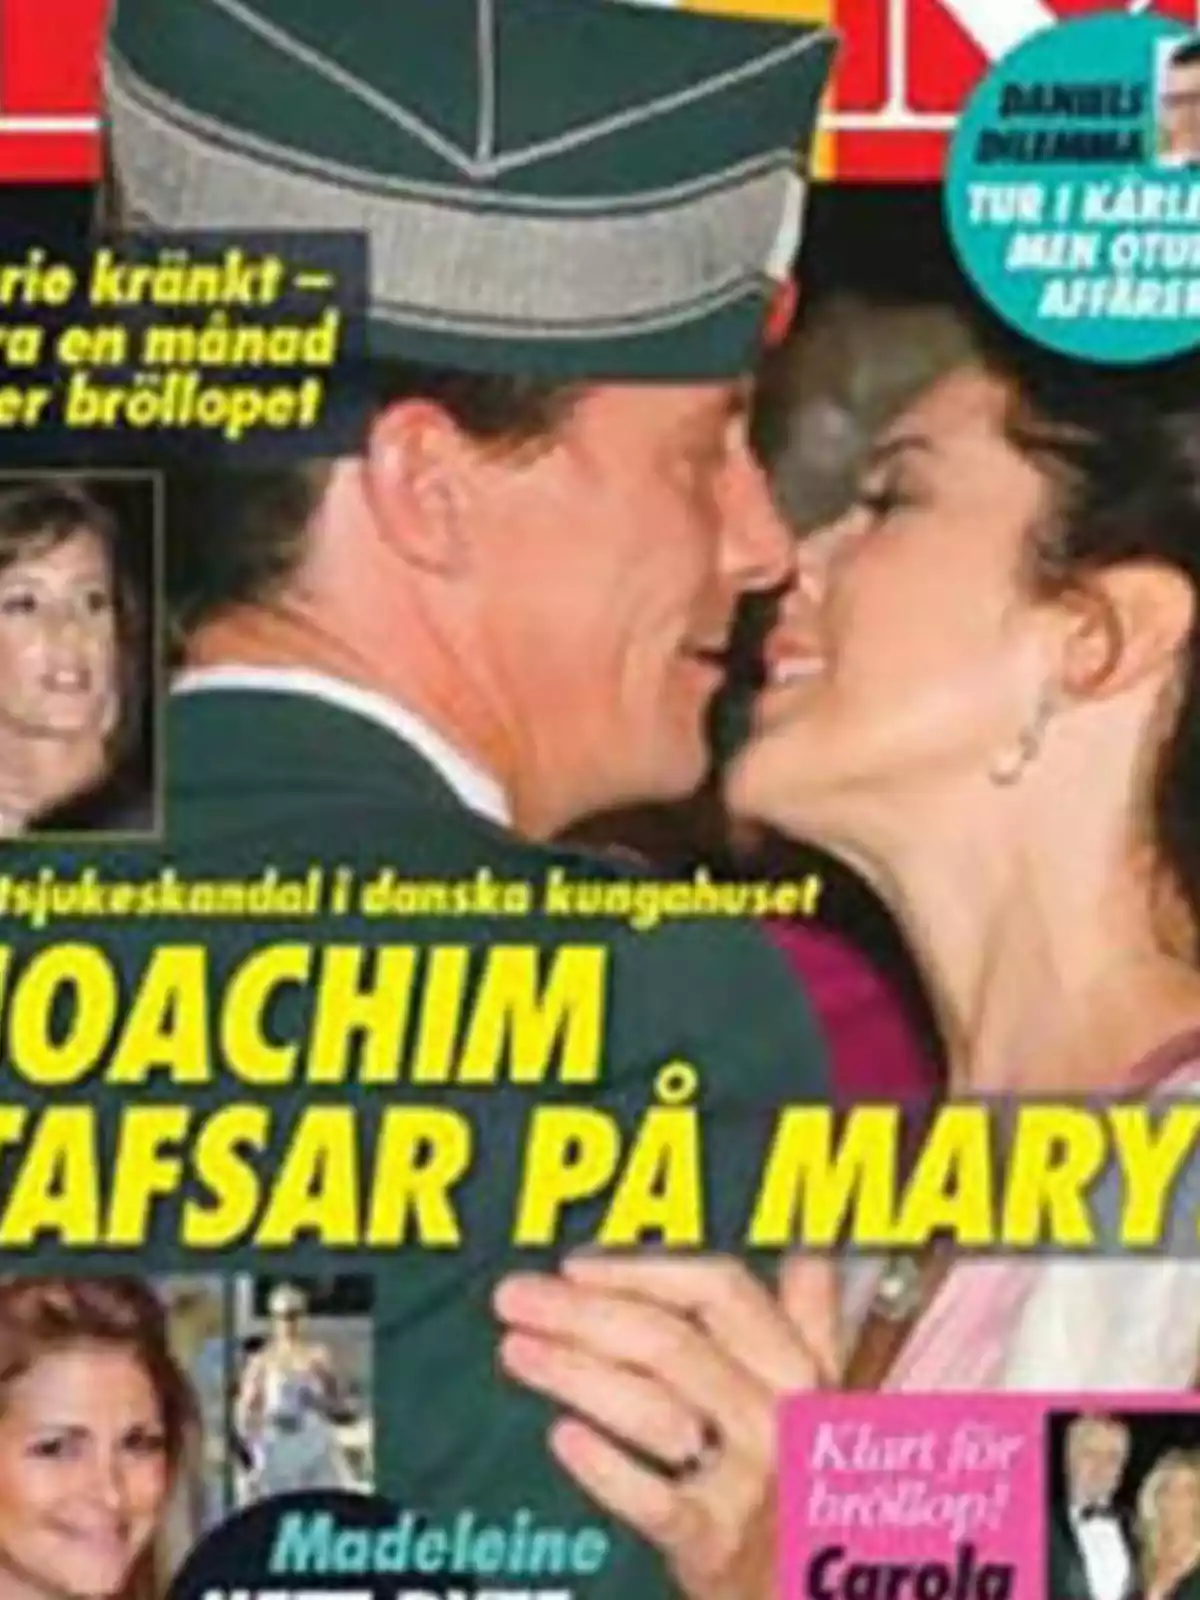 Portada de revista con un hombre y una mujer bailando, con varios titulares en sueco y fotos pequeñas de otras personas.